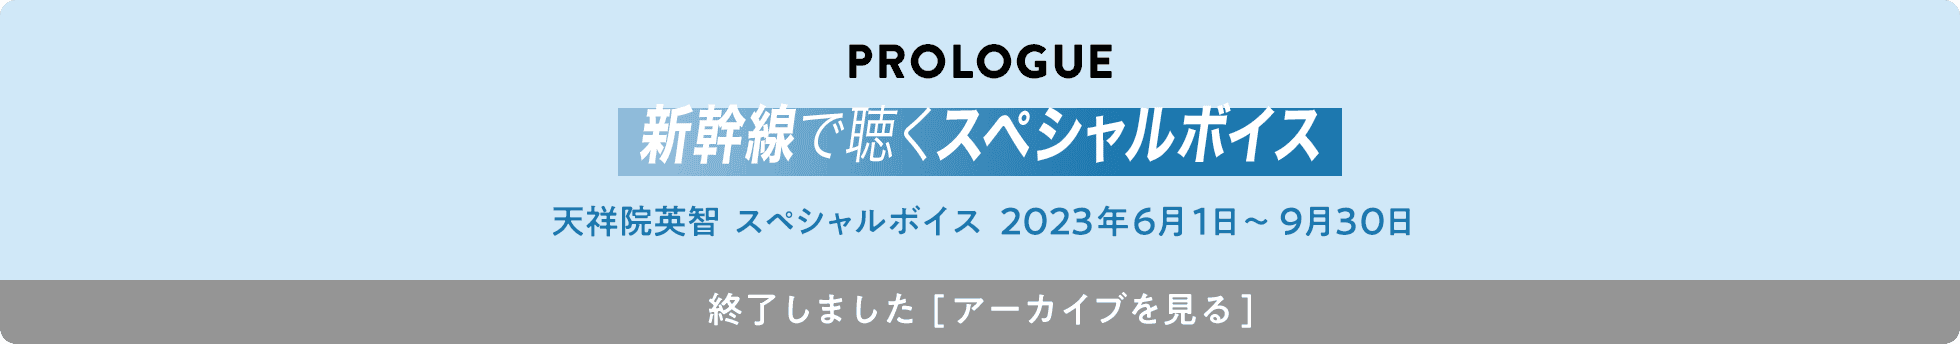 PROLOGUE 新幹線で聴くスペシャルボイス ENSEMBLE SQUARE代表 天祥院英智 スペシャルボイス 2023年6月1日～9月30日 終了しました[アーカイブを見る]